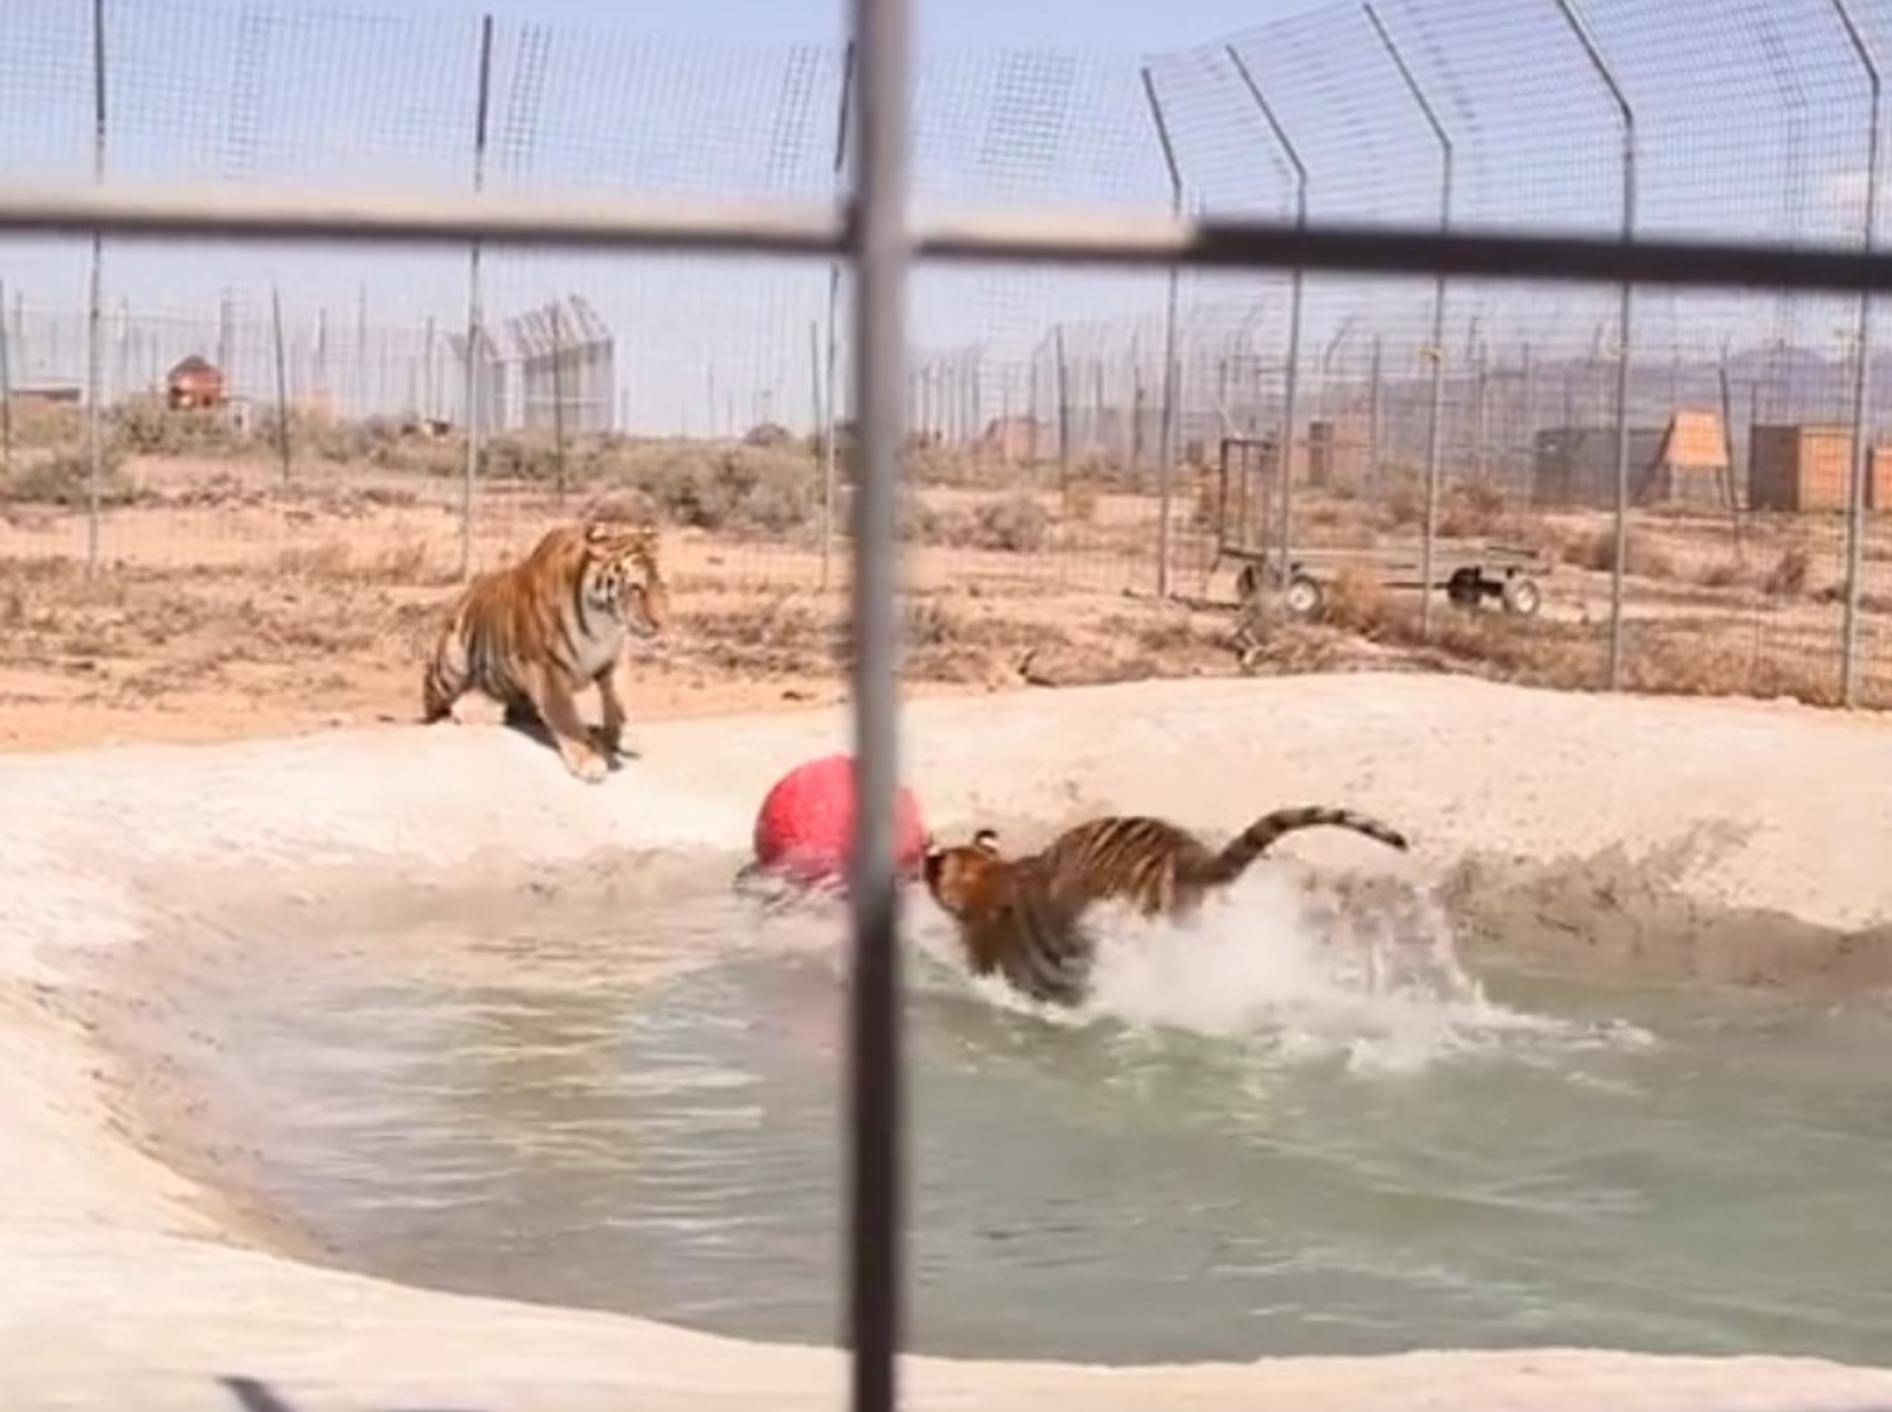 So viel Spaß haben die beiden Tiger Lily und Carli in ihrem eigenen Pool – YouTube / IFAW - International Fund For Animal Welfare